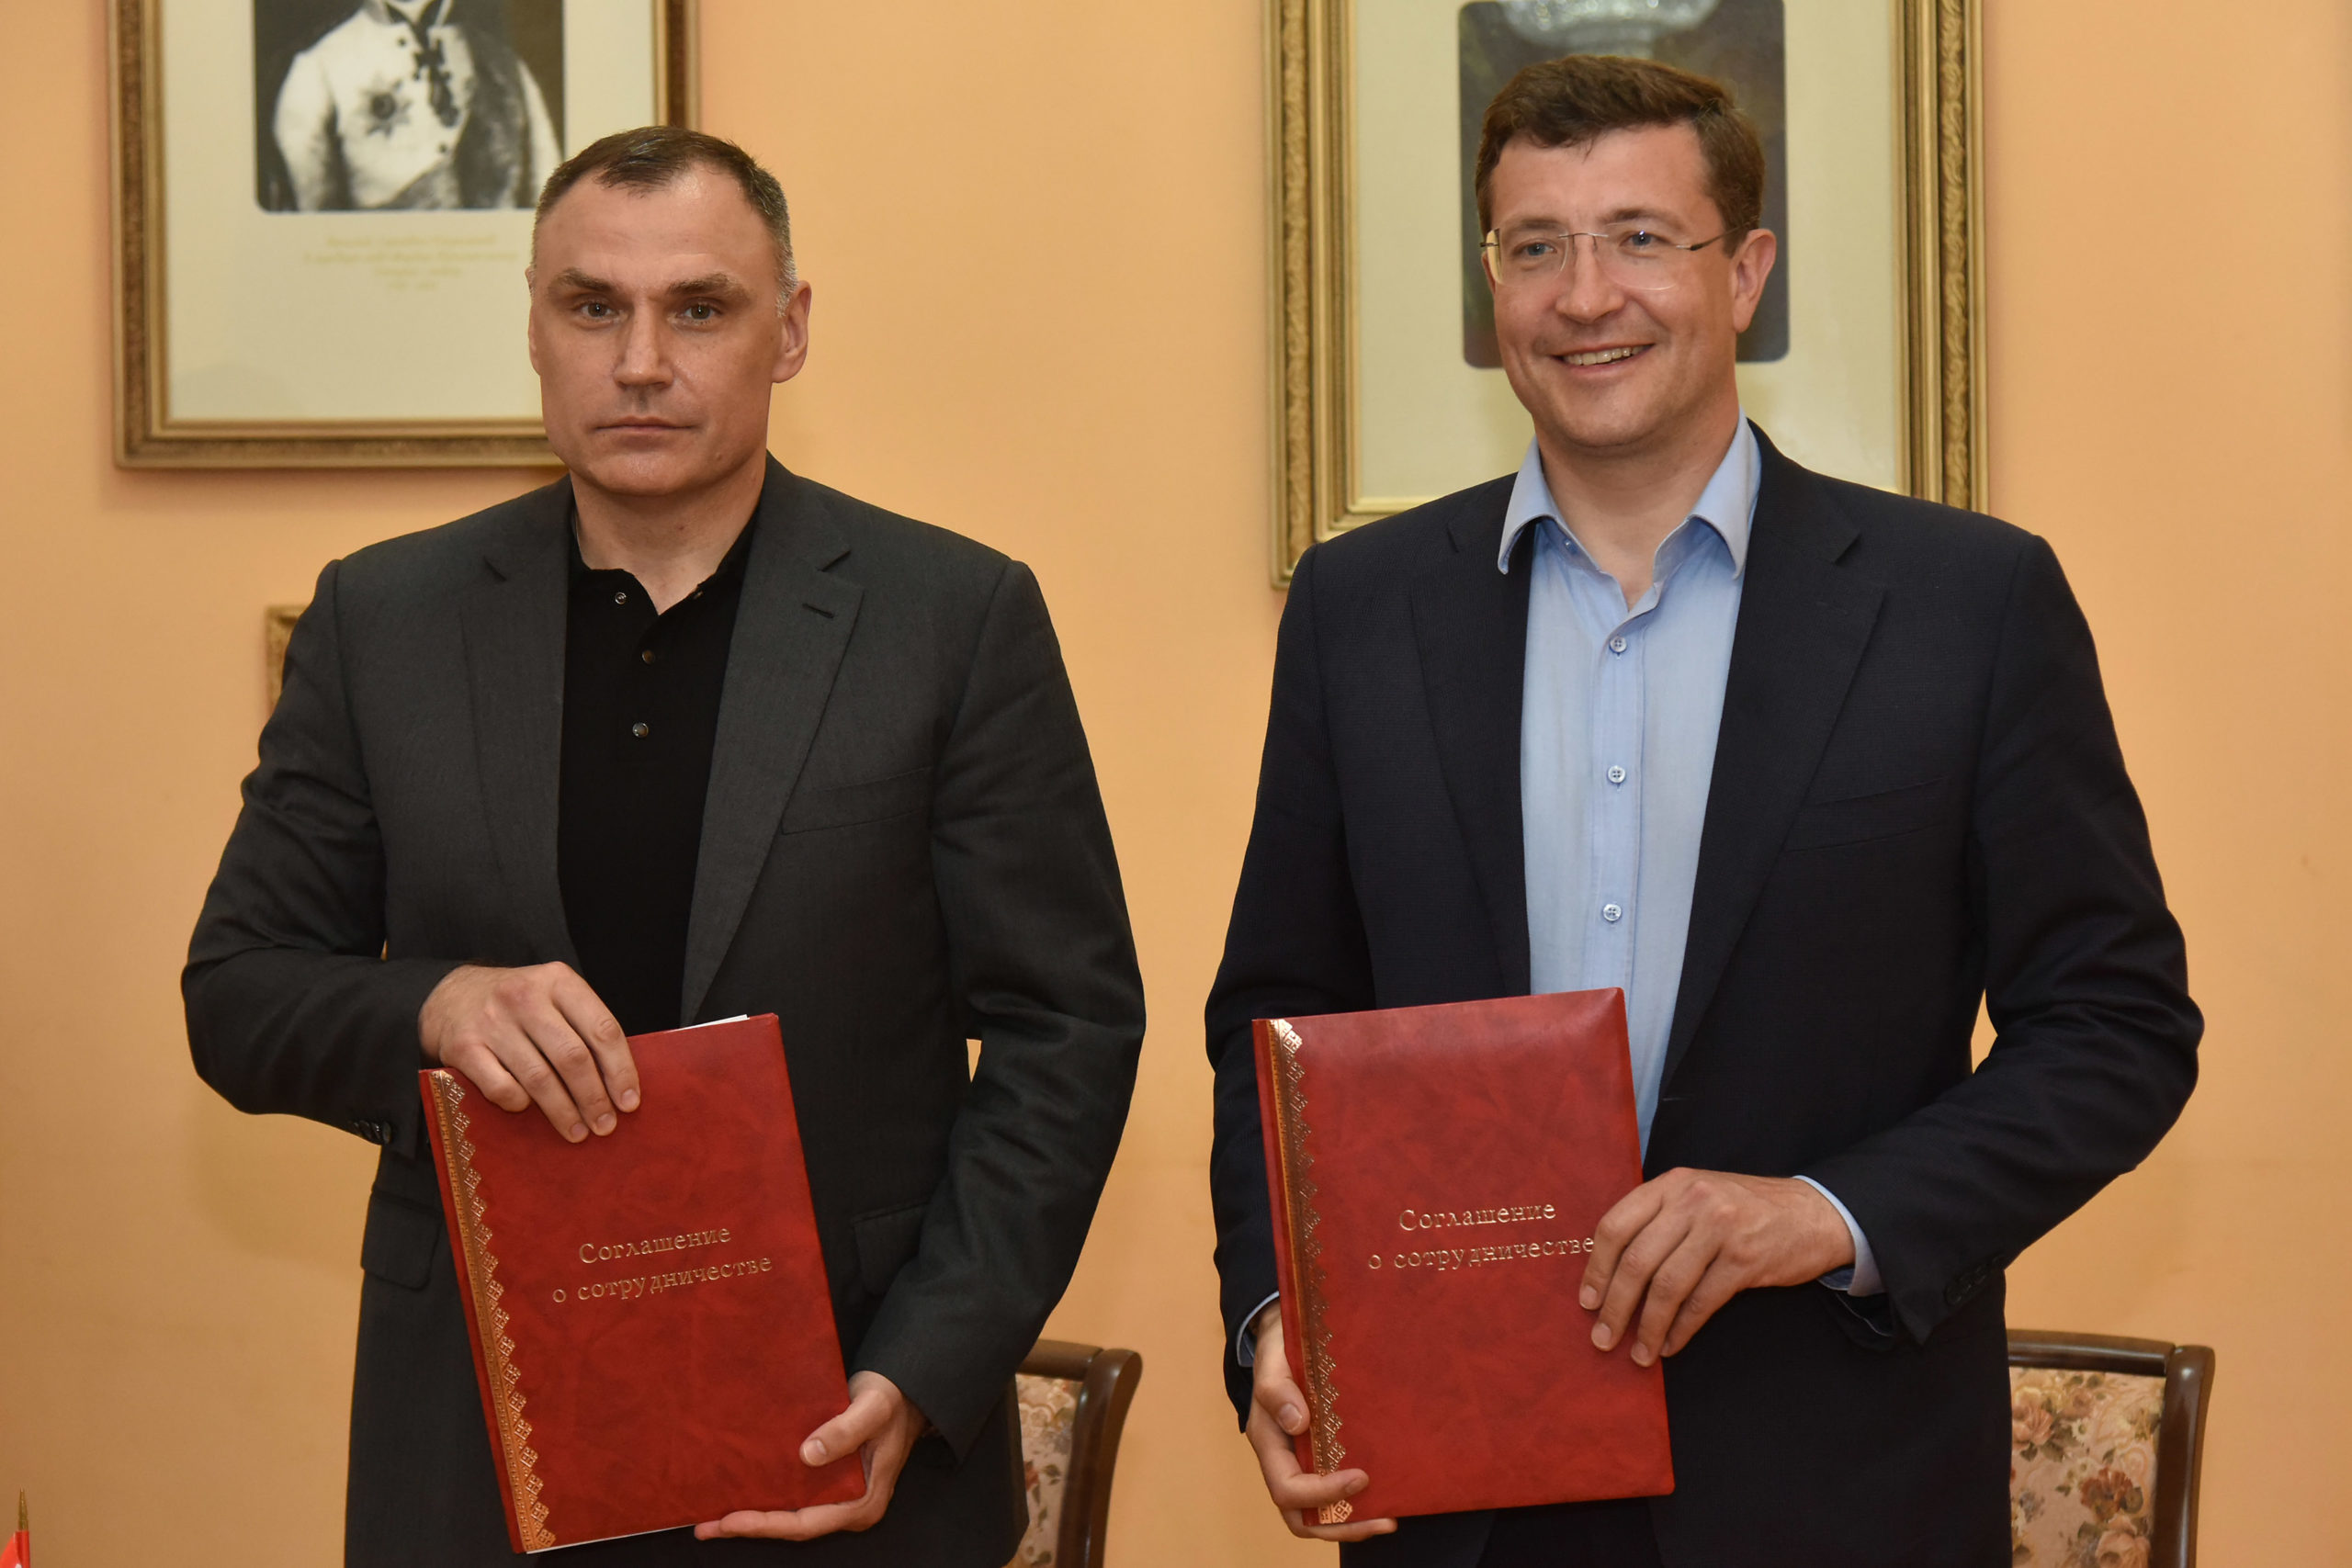 Глеб Никитин и Юрий Зайцев подписали соглашение о сотрудничестве при реализации туристических проектов